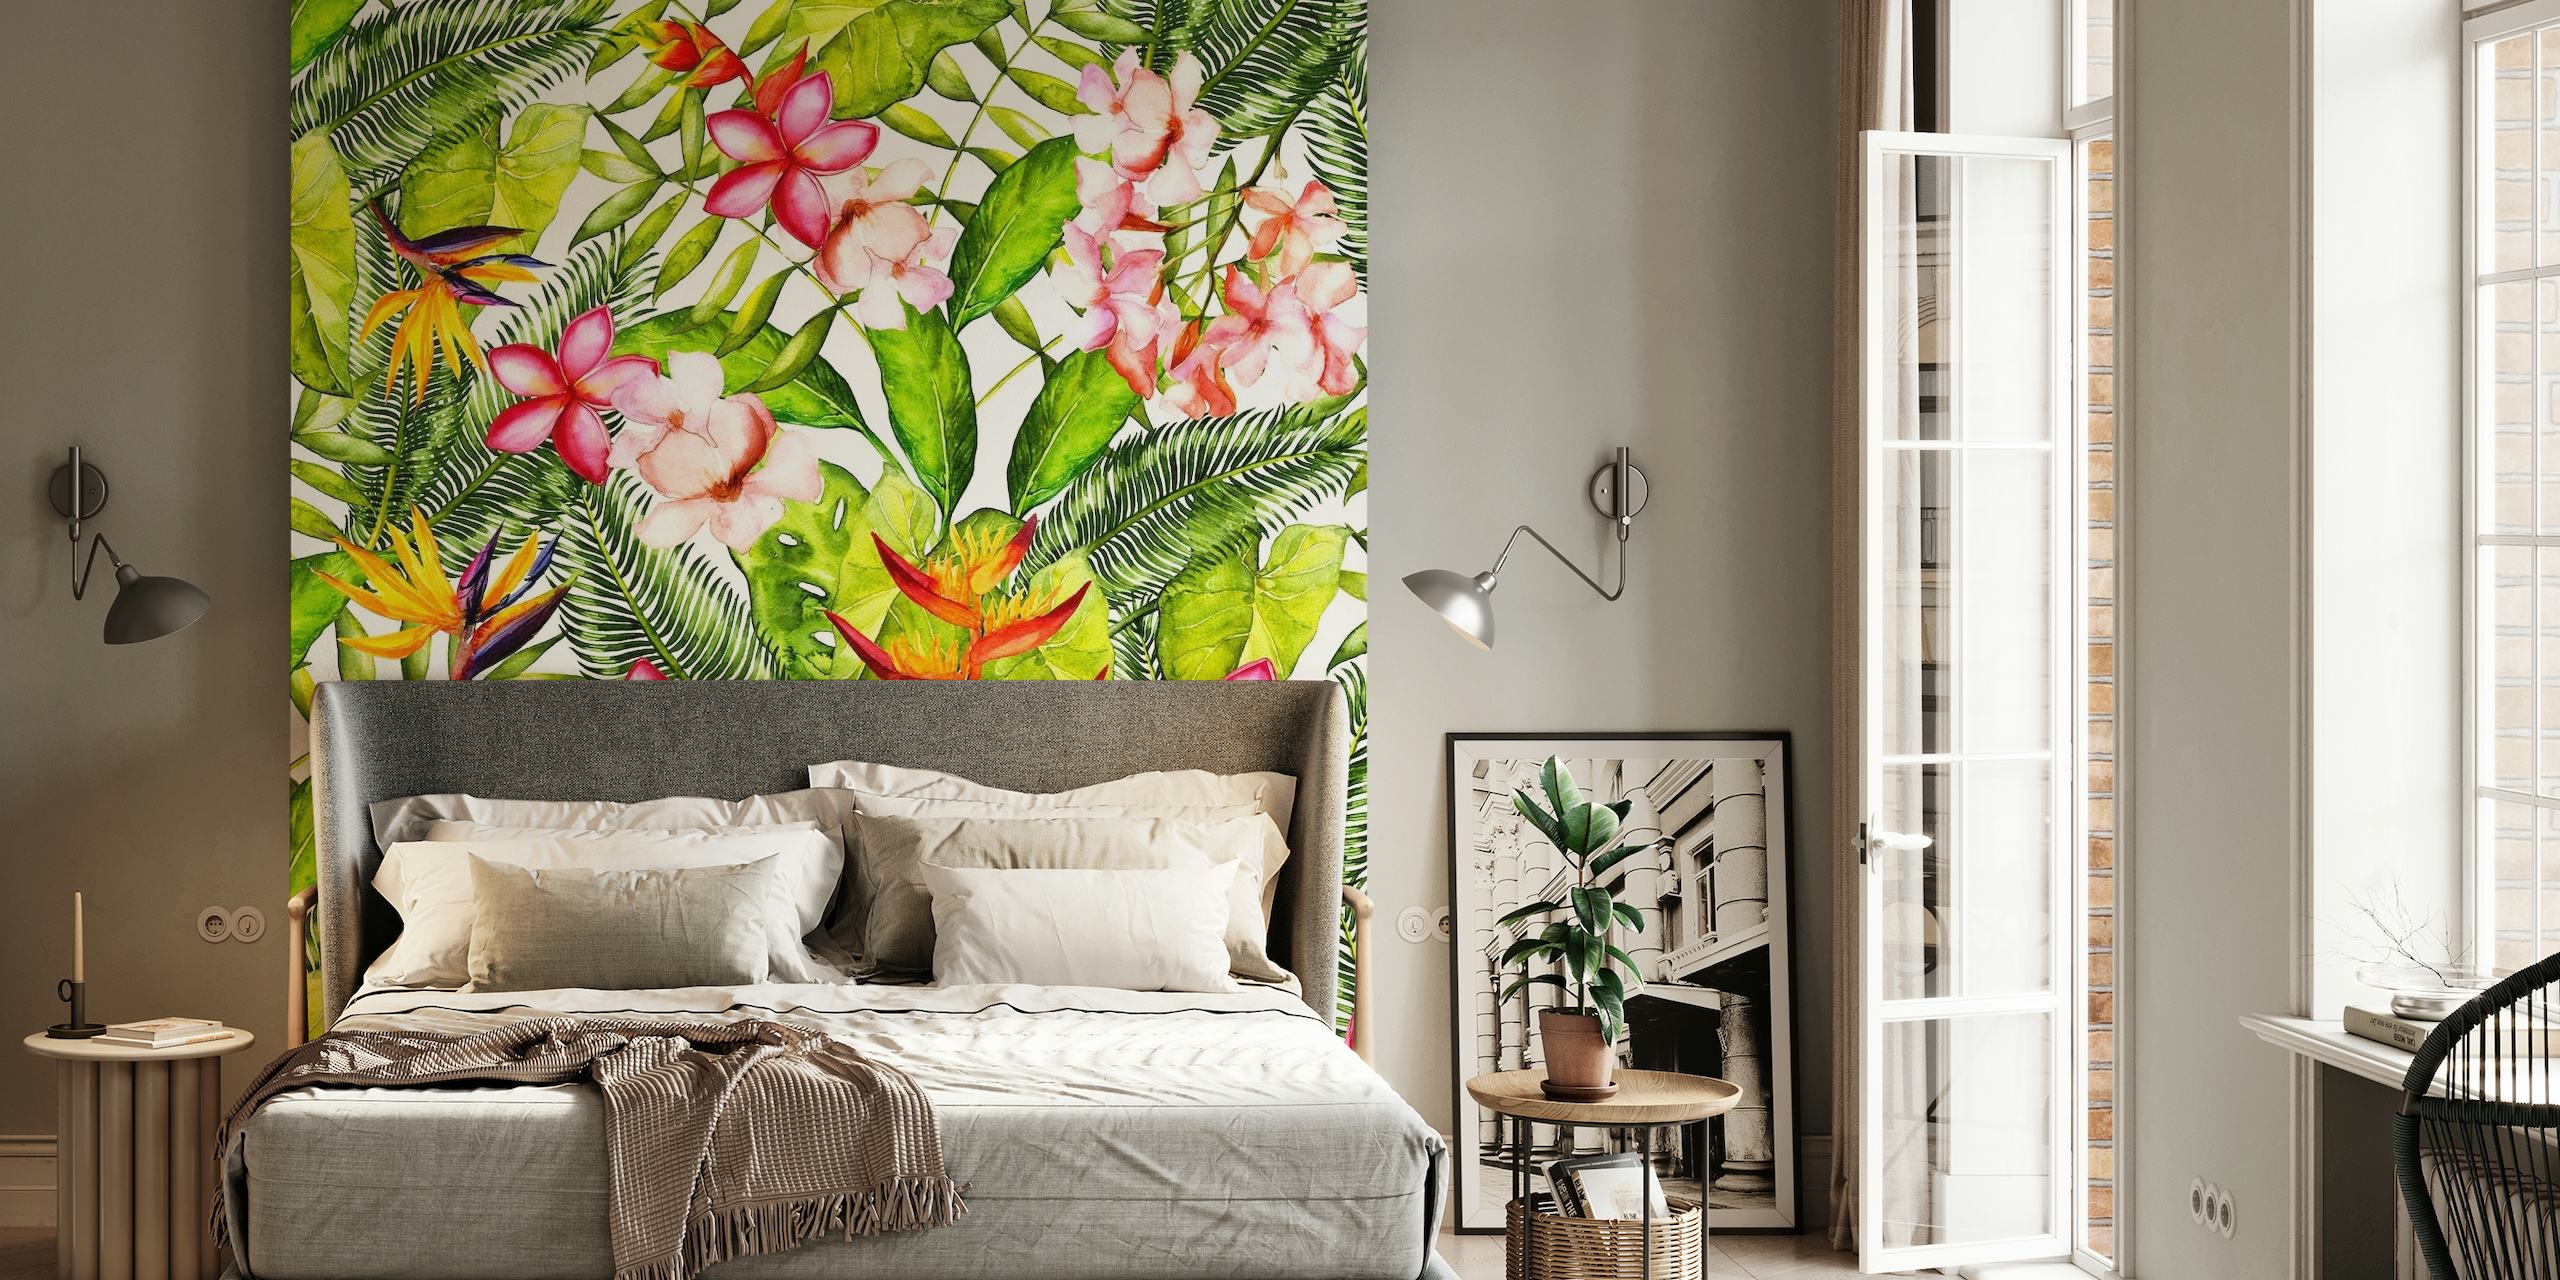 Plumeria and Tropical Jungle Flowers -seinämaalaus, jossa on vehreää ja vaaleanpunaisia kukkia